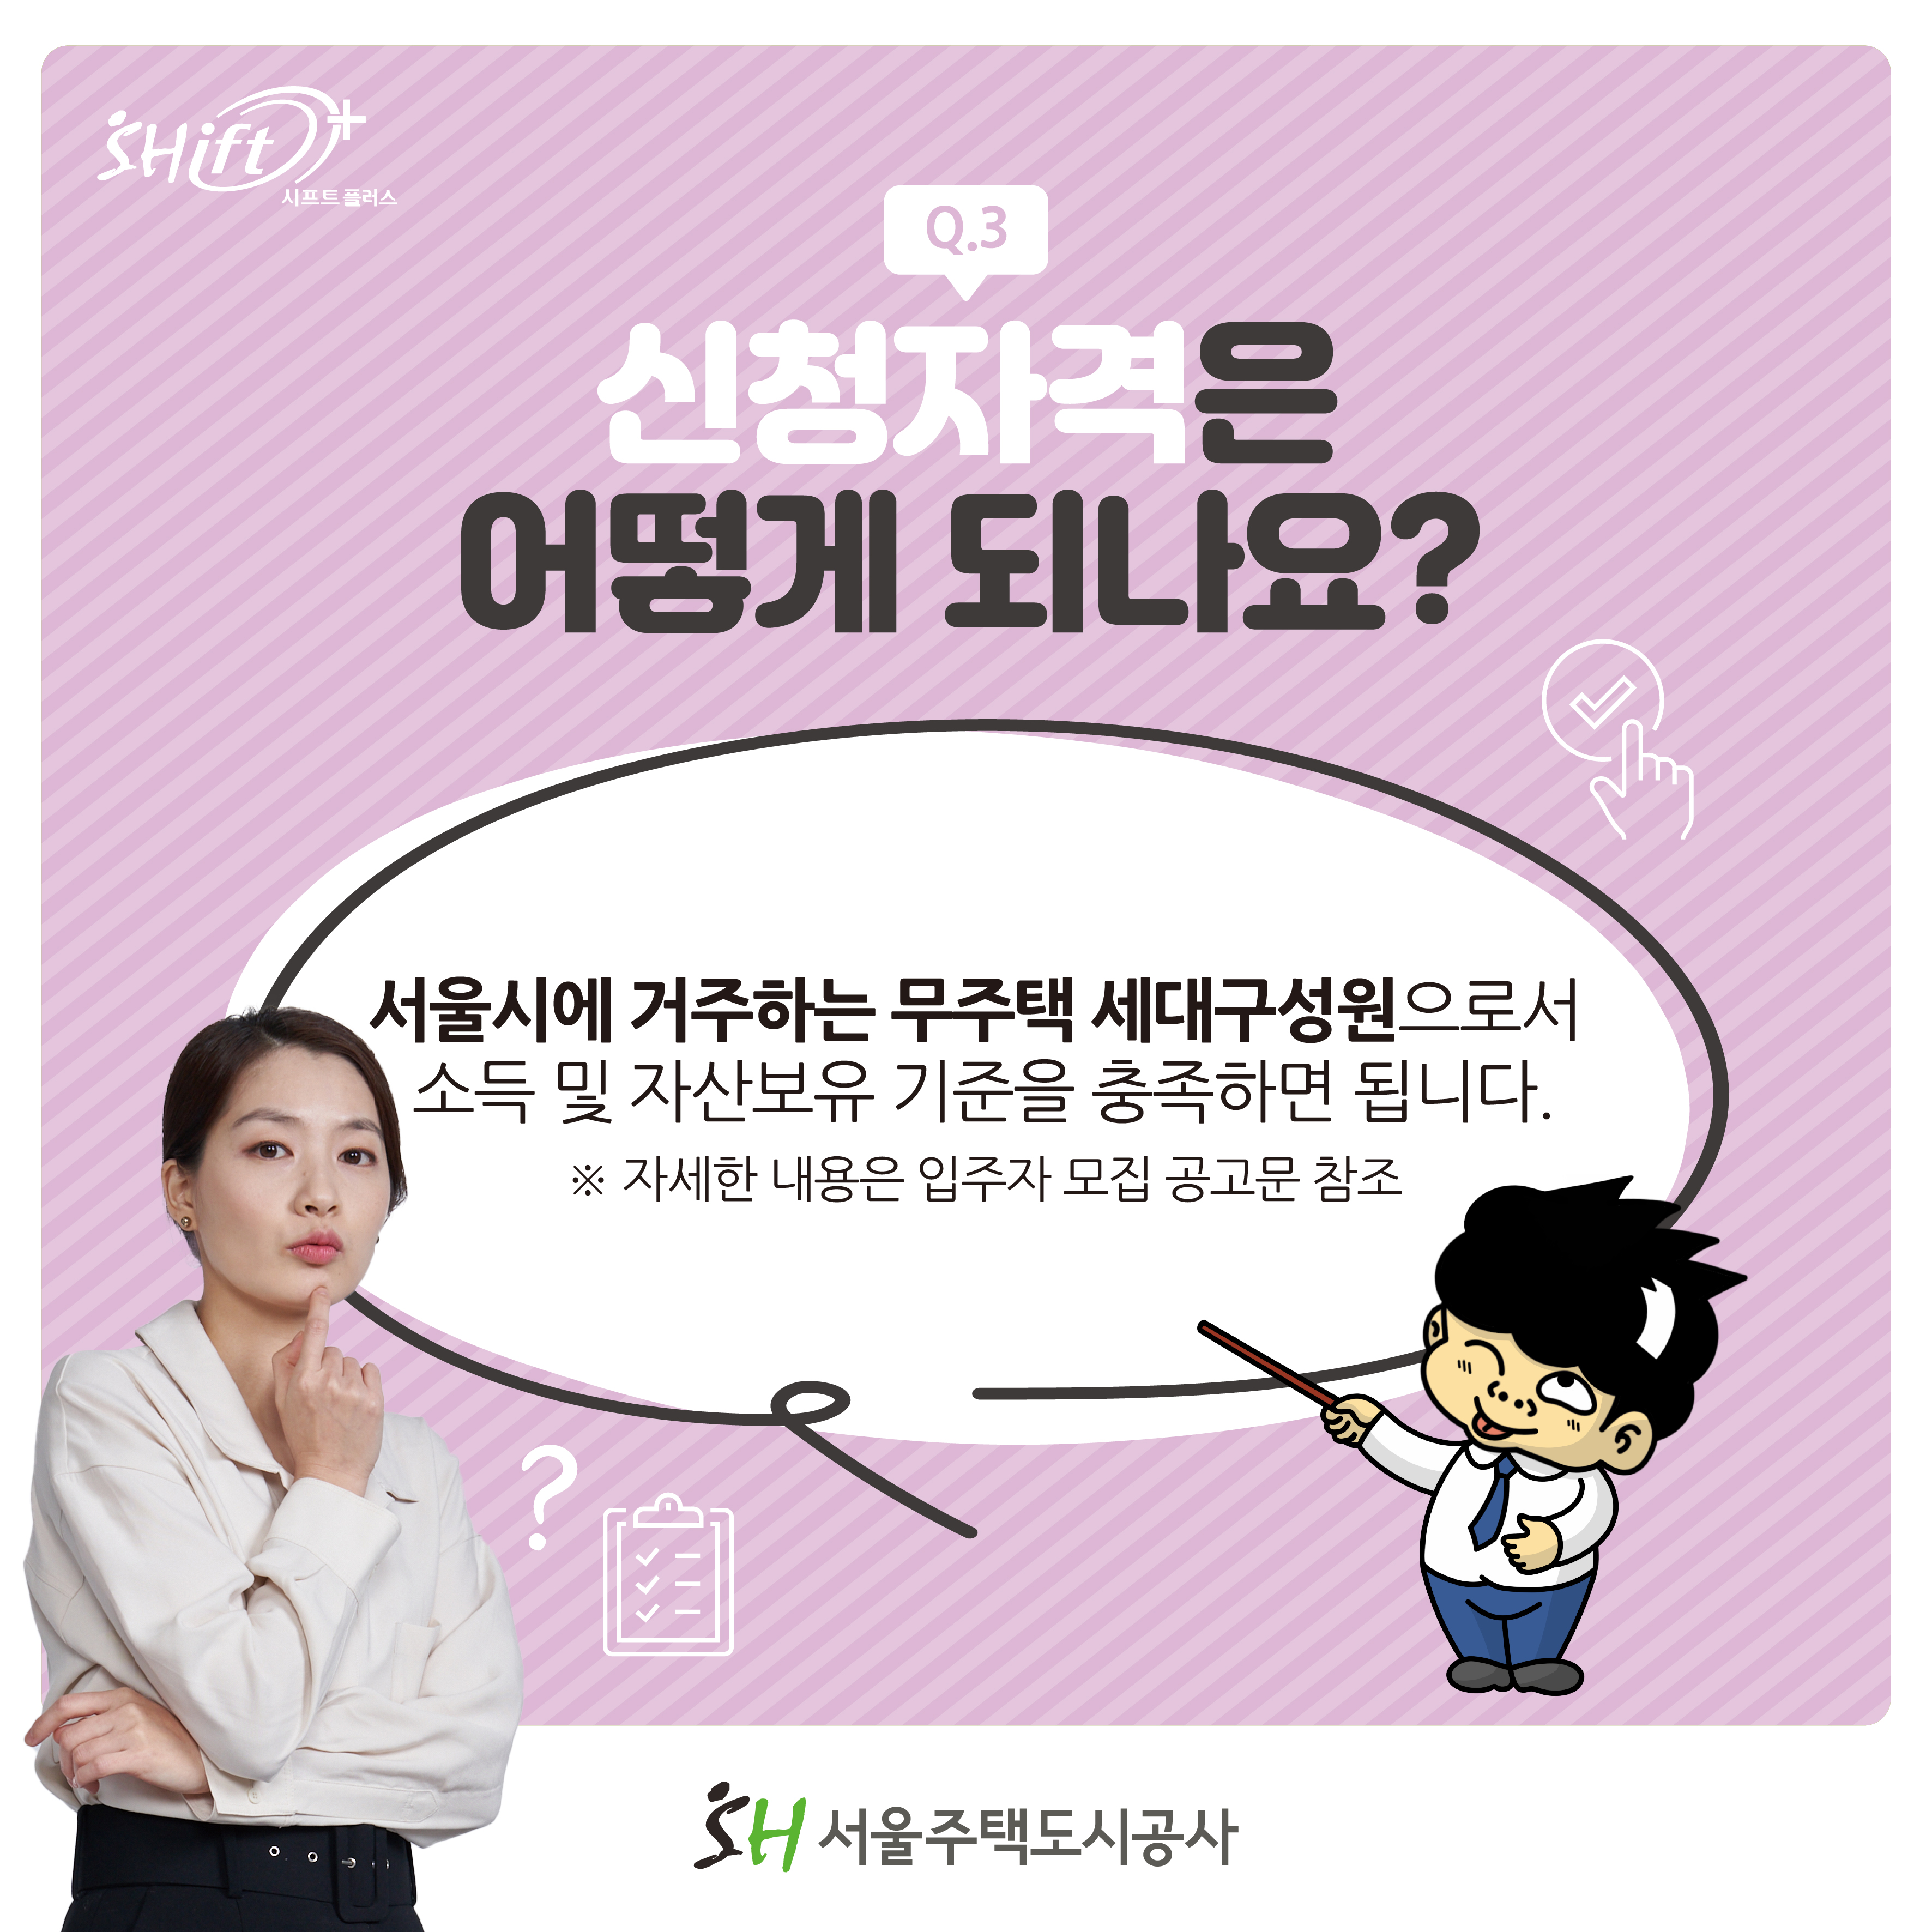 Q3: 신청자격은 어？게 되나요?
서울시에 거주하는 무주택 세대구성원으로서 소득 및 자산보유 기준을 충족하면 됩니다.
※ 자세한 내용은 입주자 모집 공고문 참조